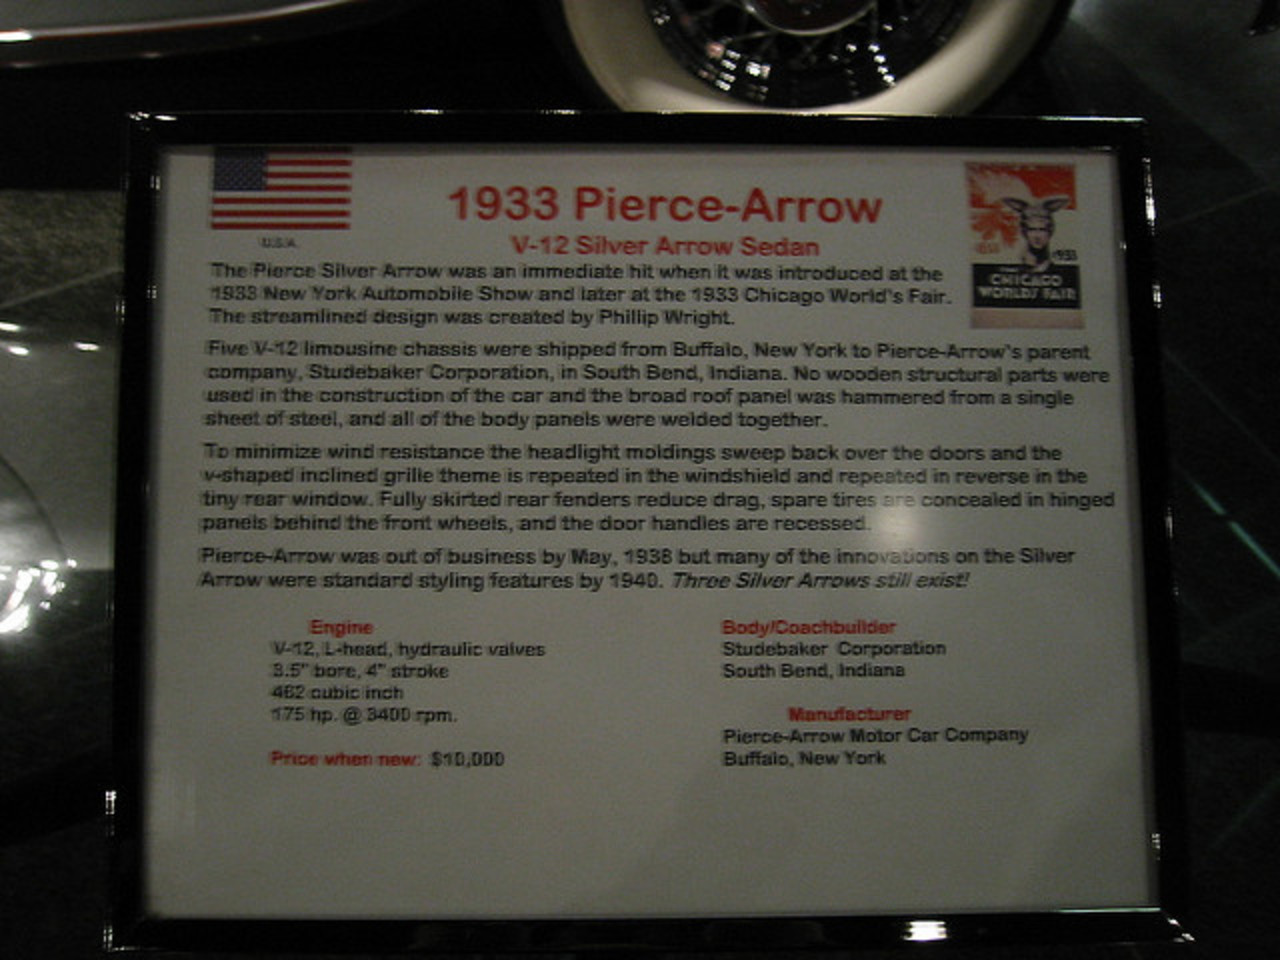 1933 Pierce-Arrow V-12 Silver Arrow Sedan | Flickr - Photo Sharing!